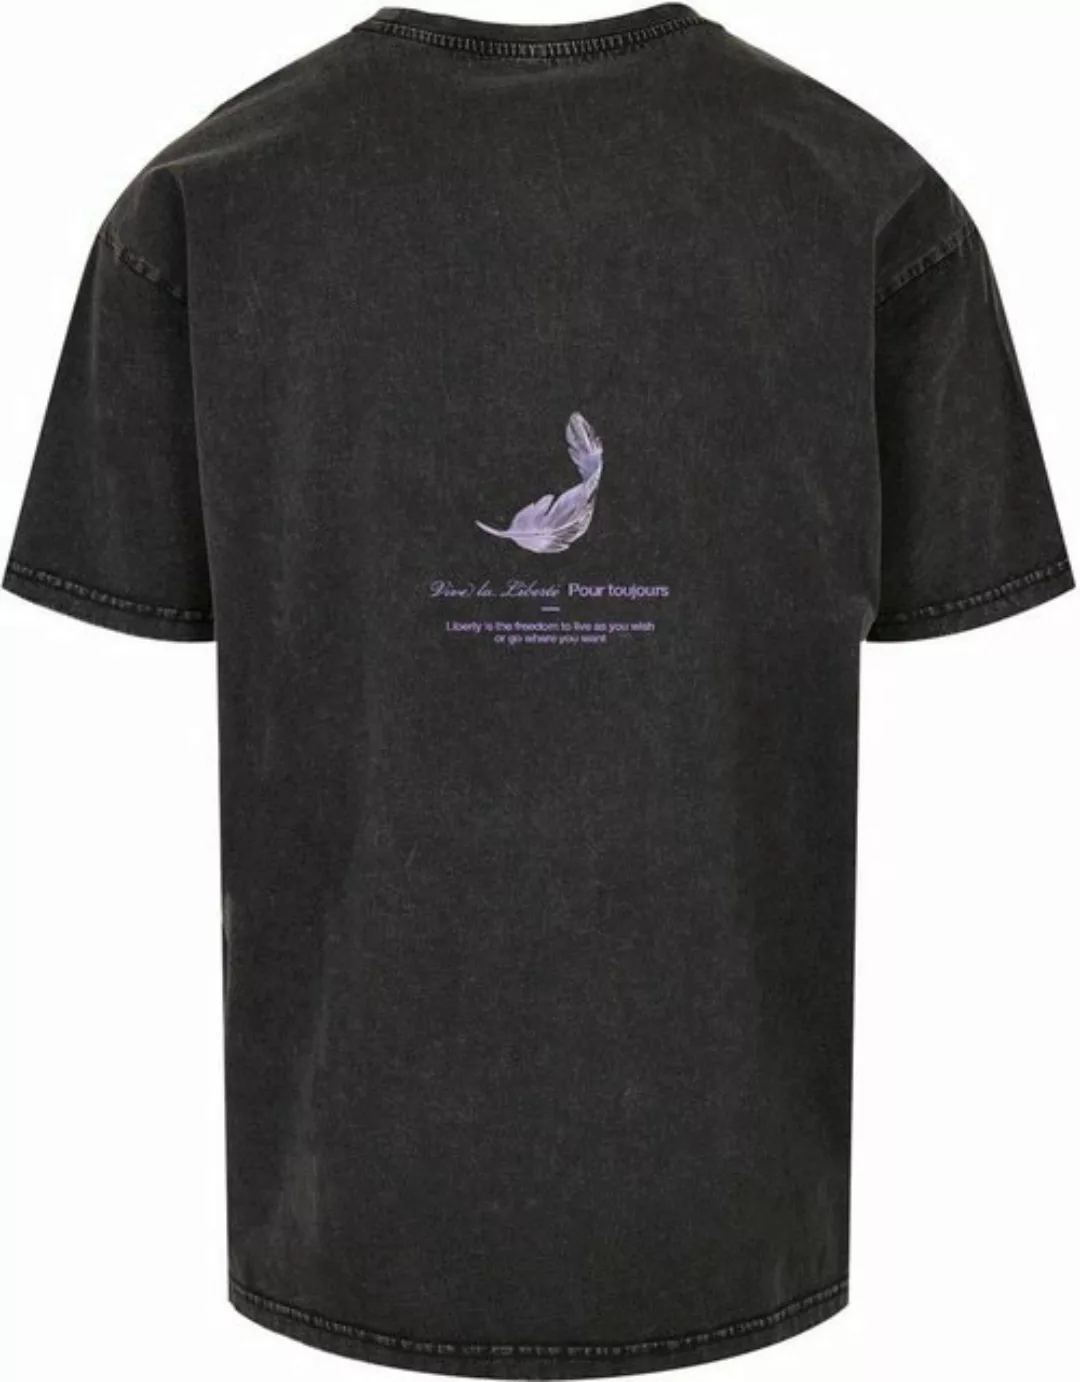 MT Upscale T-Shirt günstig online kaufen